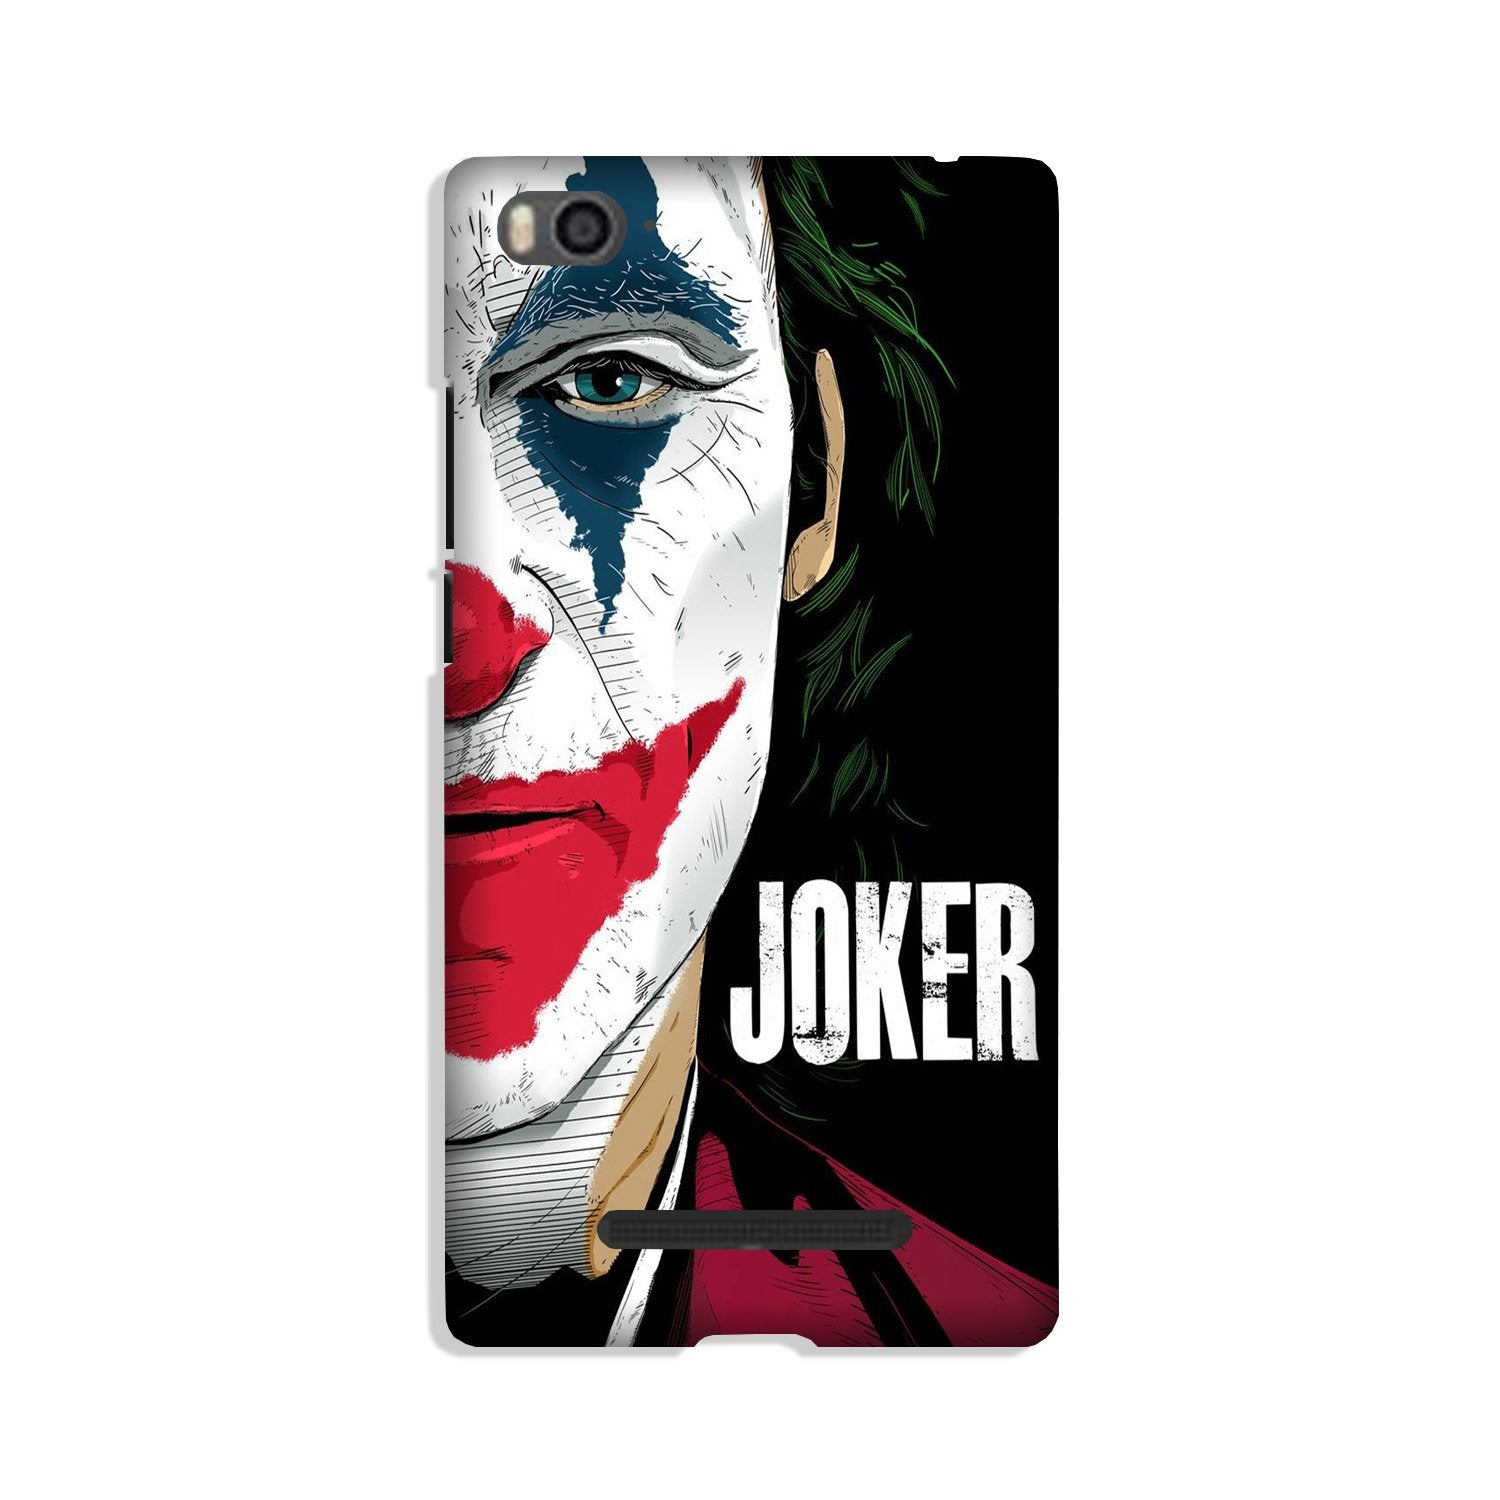 Joker Mobile Back Case for Xiaomi Mi 4i (Design - 301)